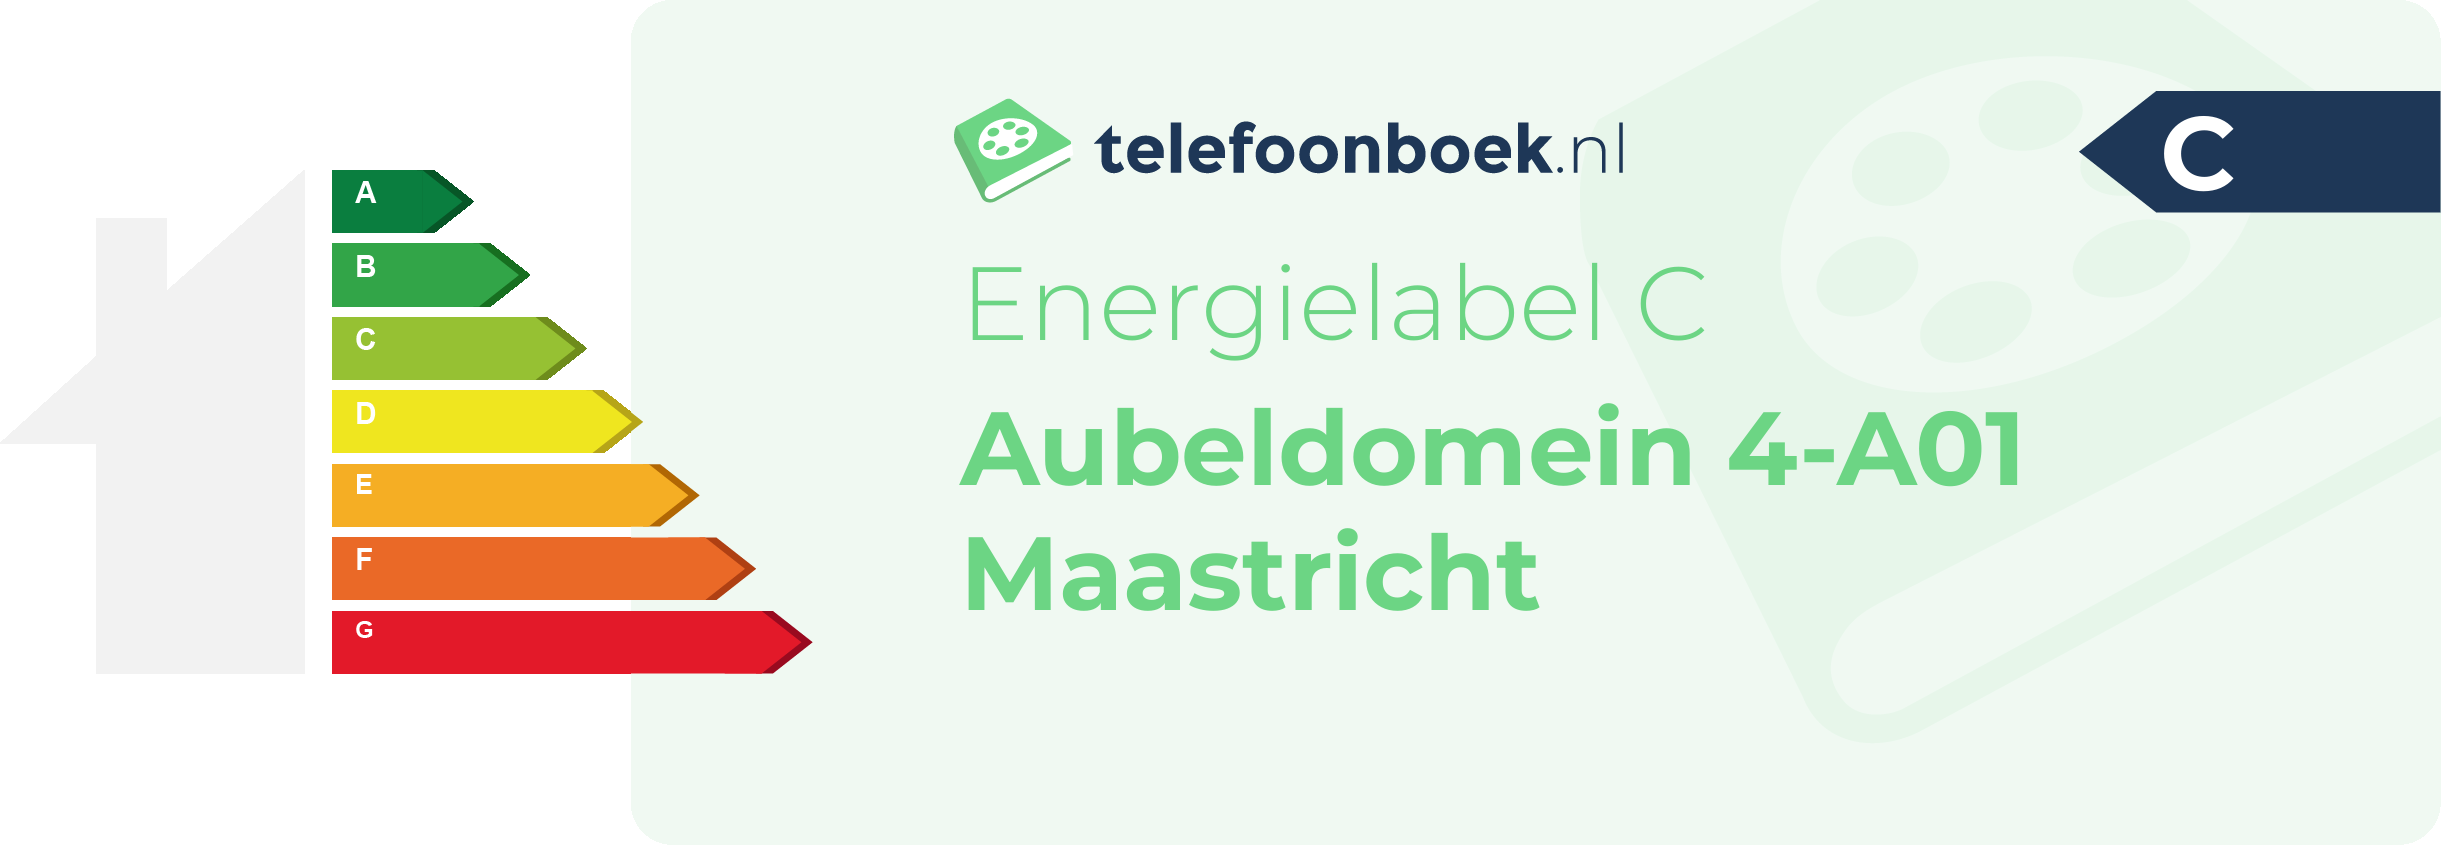 Energielabel Aubeldomein 4-A01 Maastricht